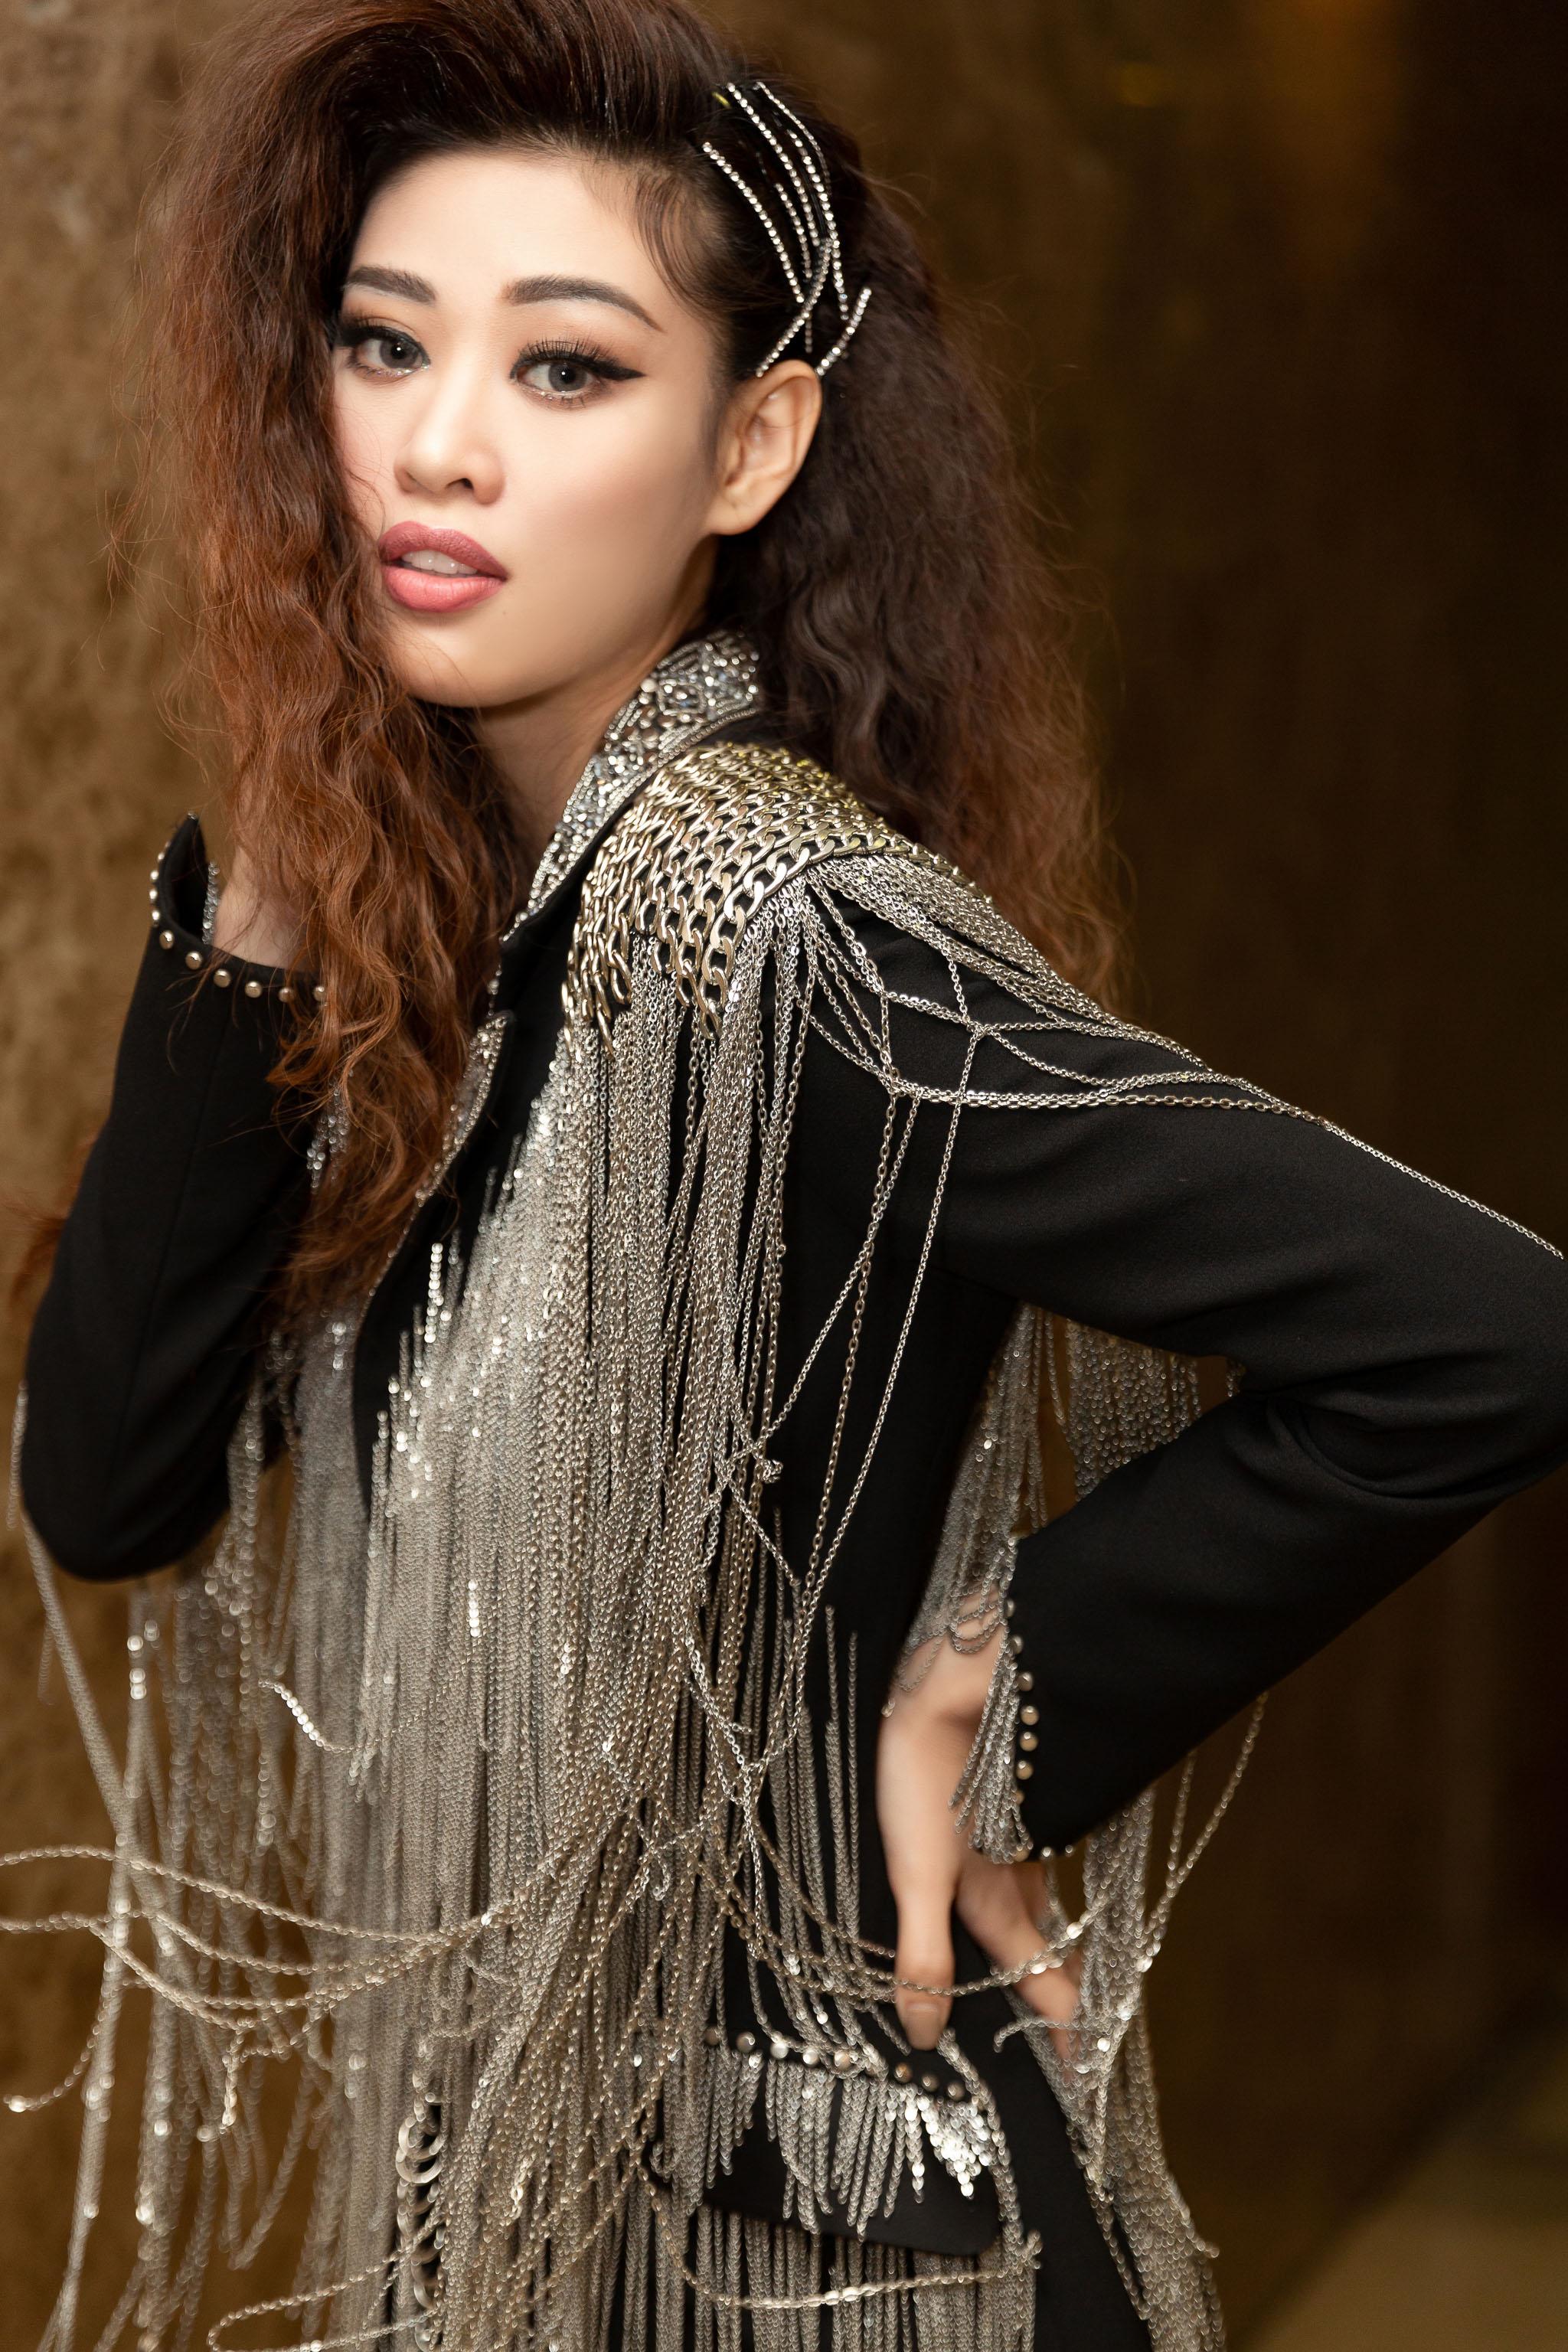 Chọn phong cách cá tính kết hợp với vest tua rua nằm trong BST “Another Day” của NTK Lê Thanh Hòa, Hoa hậu Khánh Vân và Á hậu Kim Duyên tạo dáng chuyên nghiệp trên thảm đỏ. 